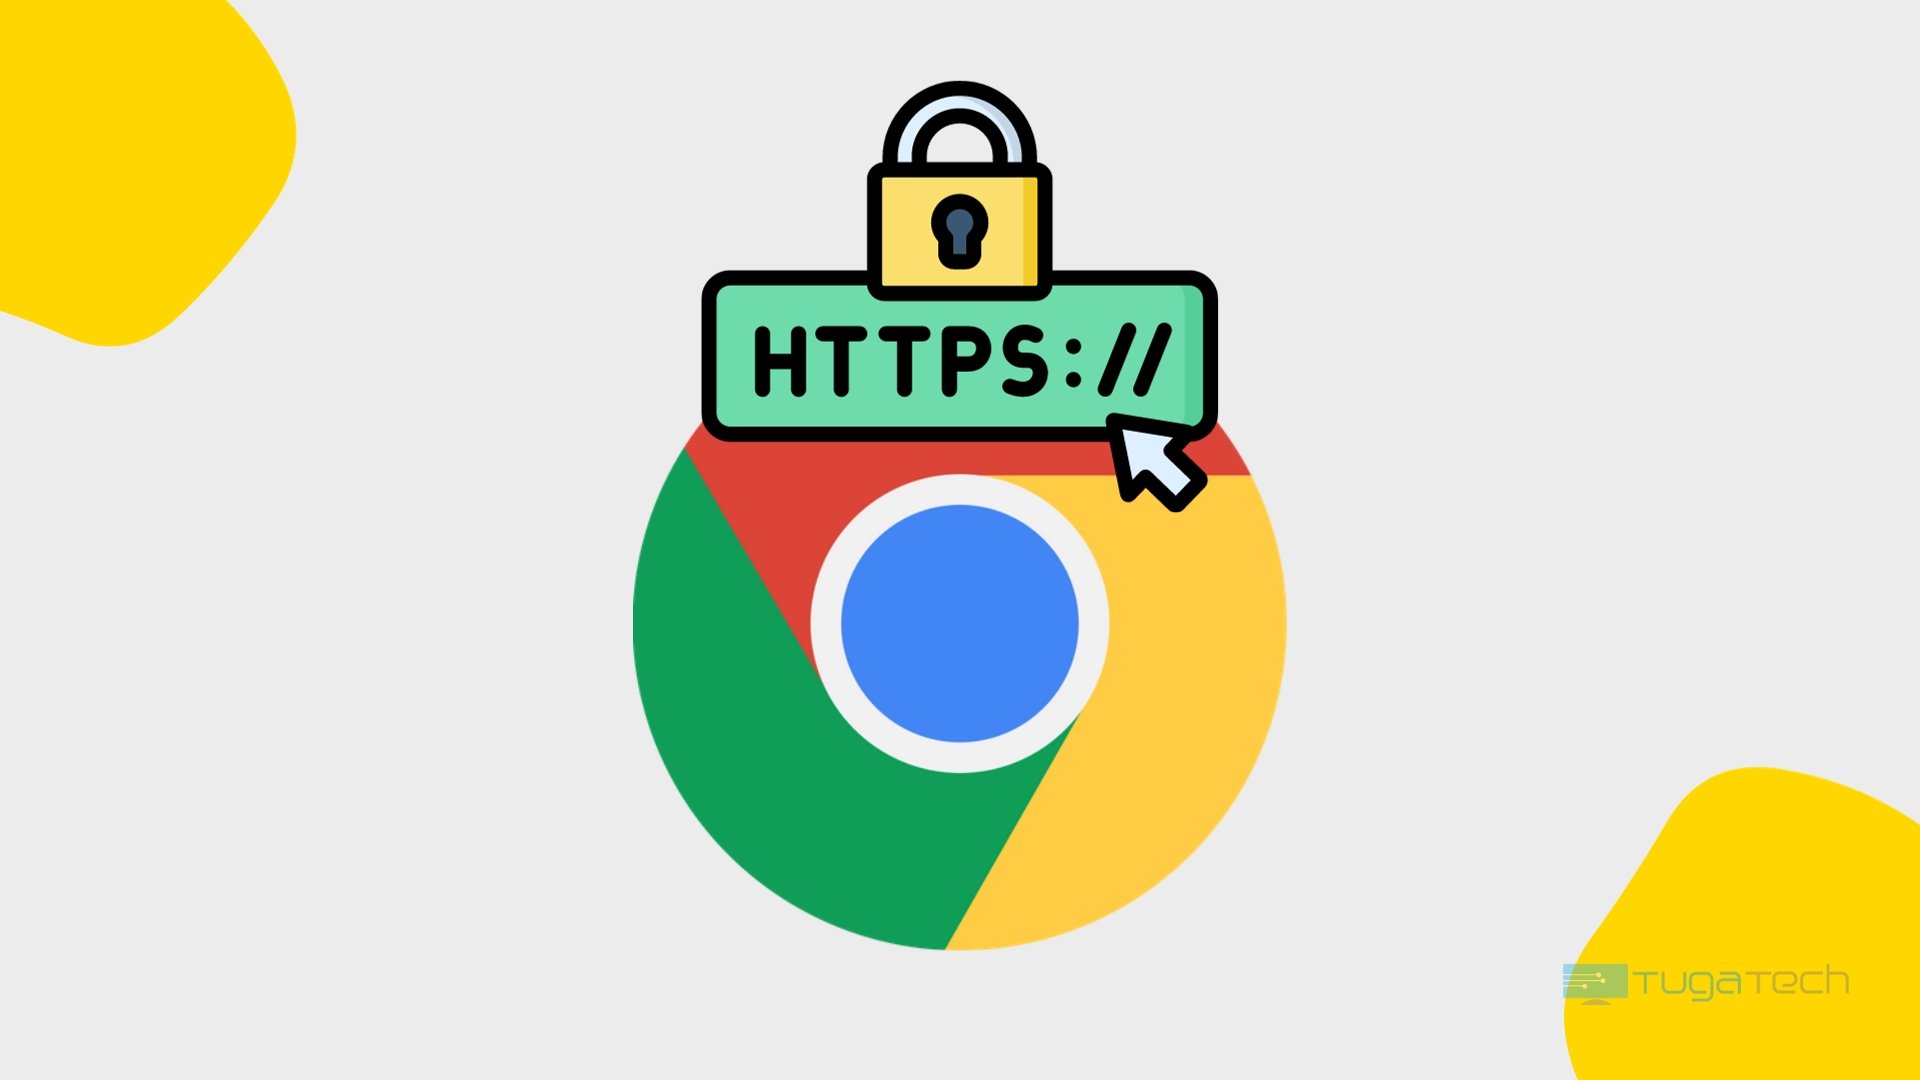 Google Chrome https